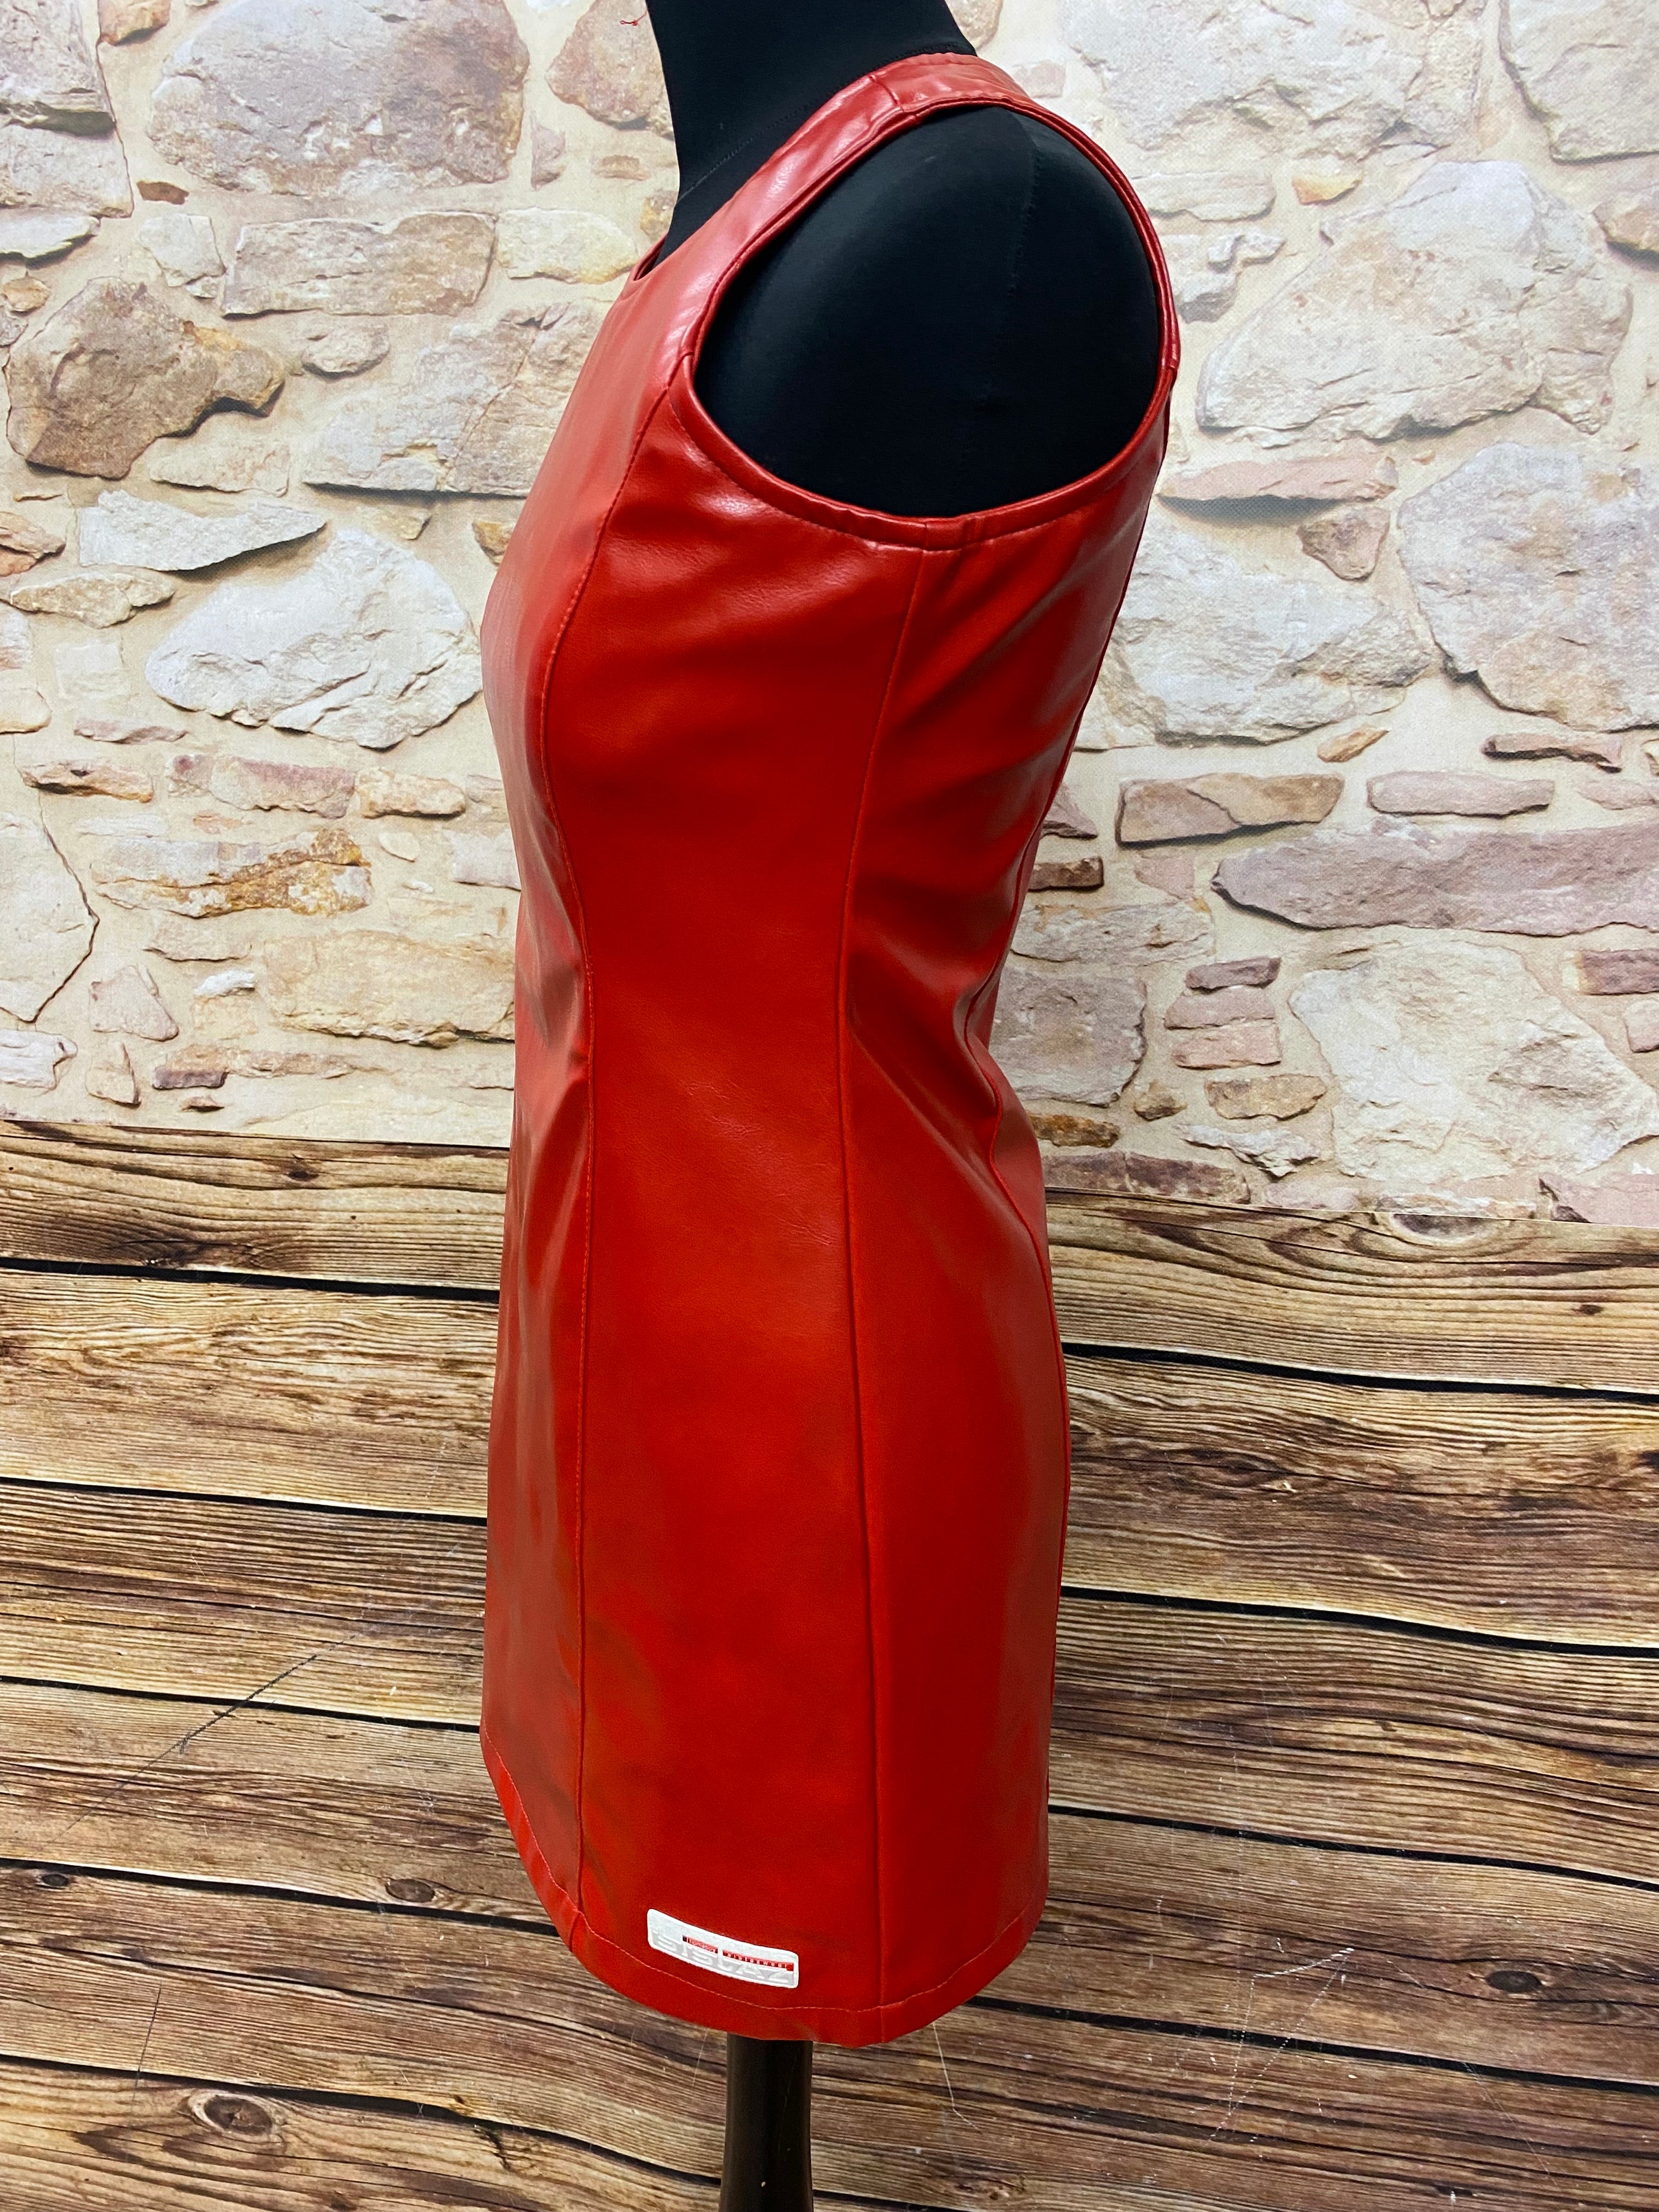 Vintage Kleid Damenkleid von Homeboy sistaz wear, enges Minikleid Gr.M in rot